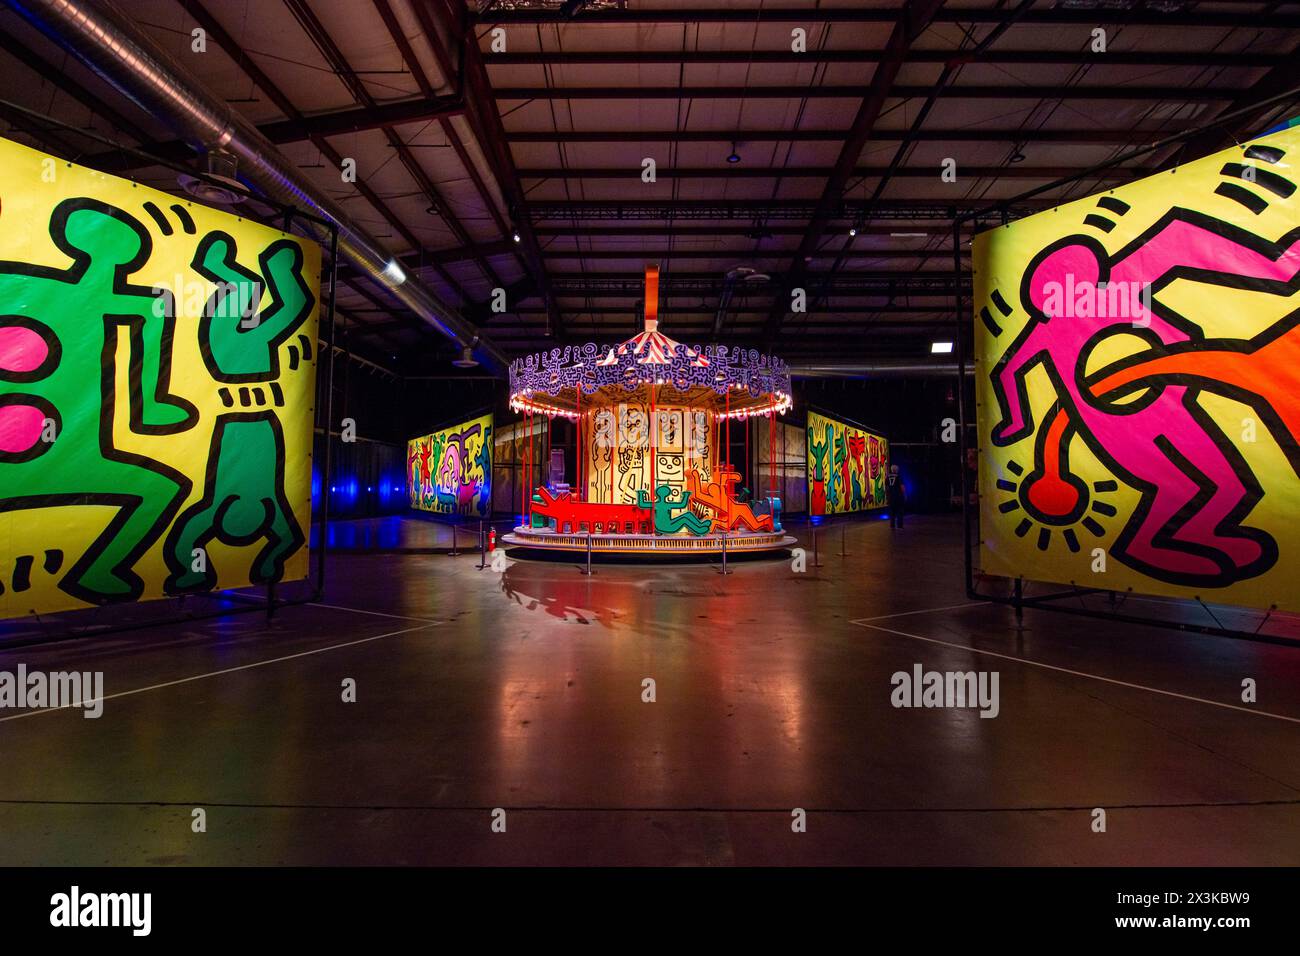 Industriell gefertigte Planen und ein bemaltes Karussell von Keith Haring sind im Luna Luna Art Amusement Park in Los Angeles zu sehen. Stockfoto